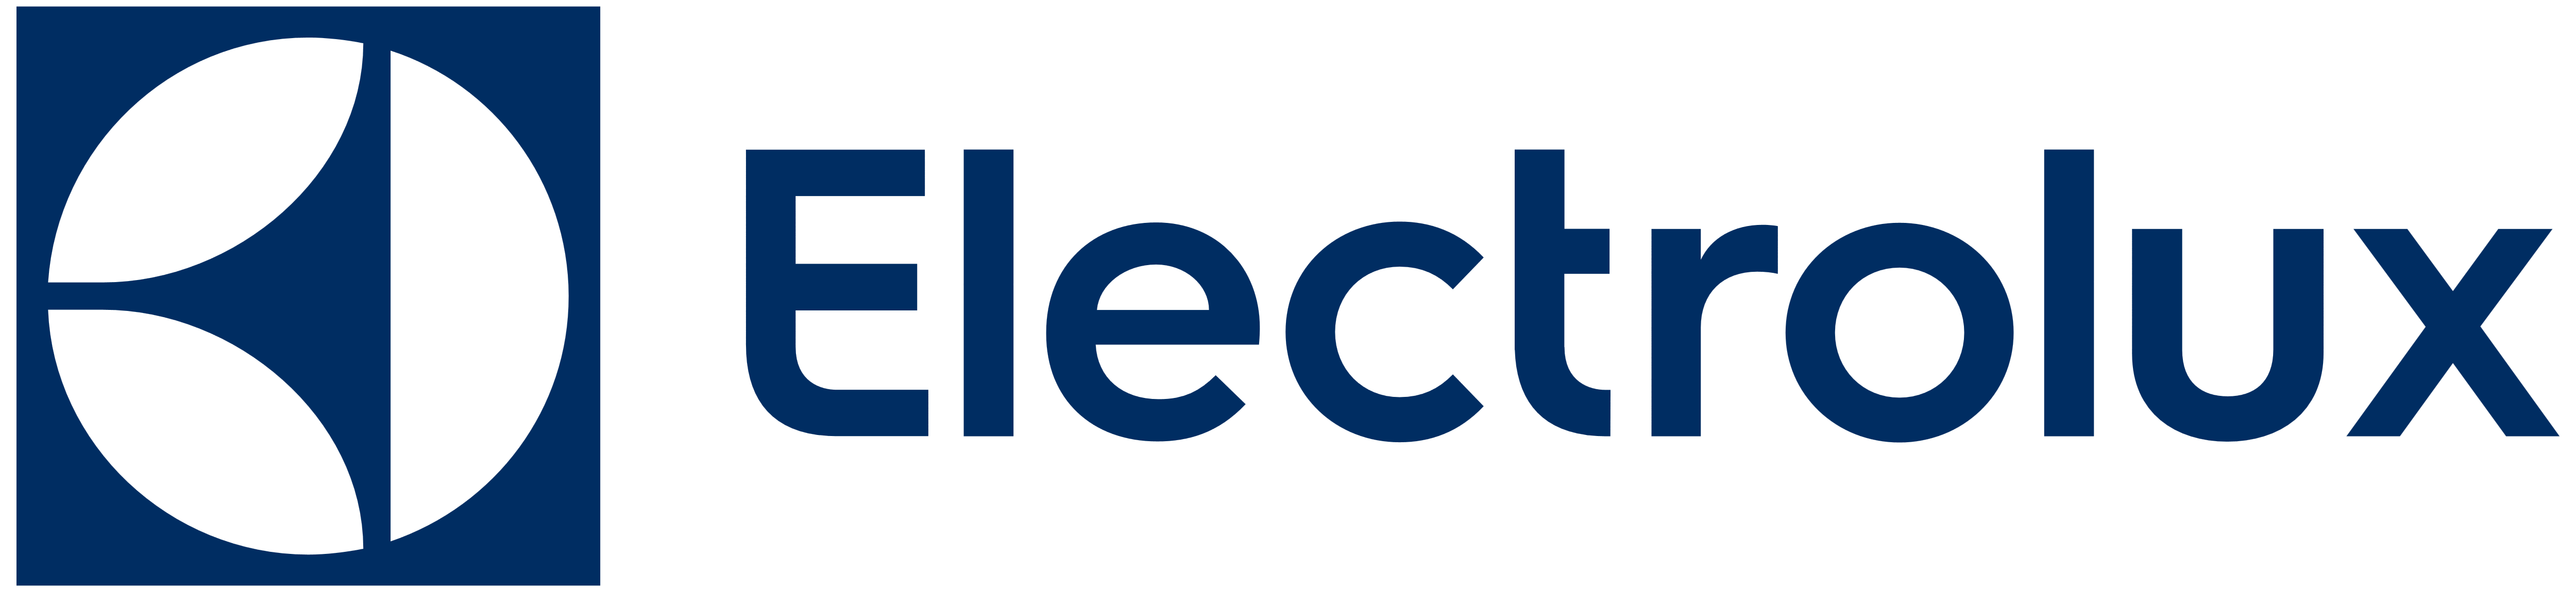 Electrolux Logo - Pluspng